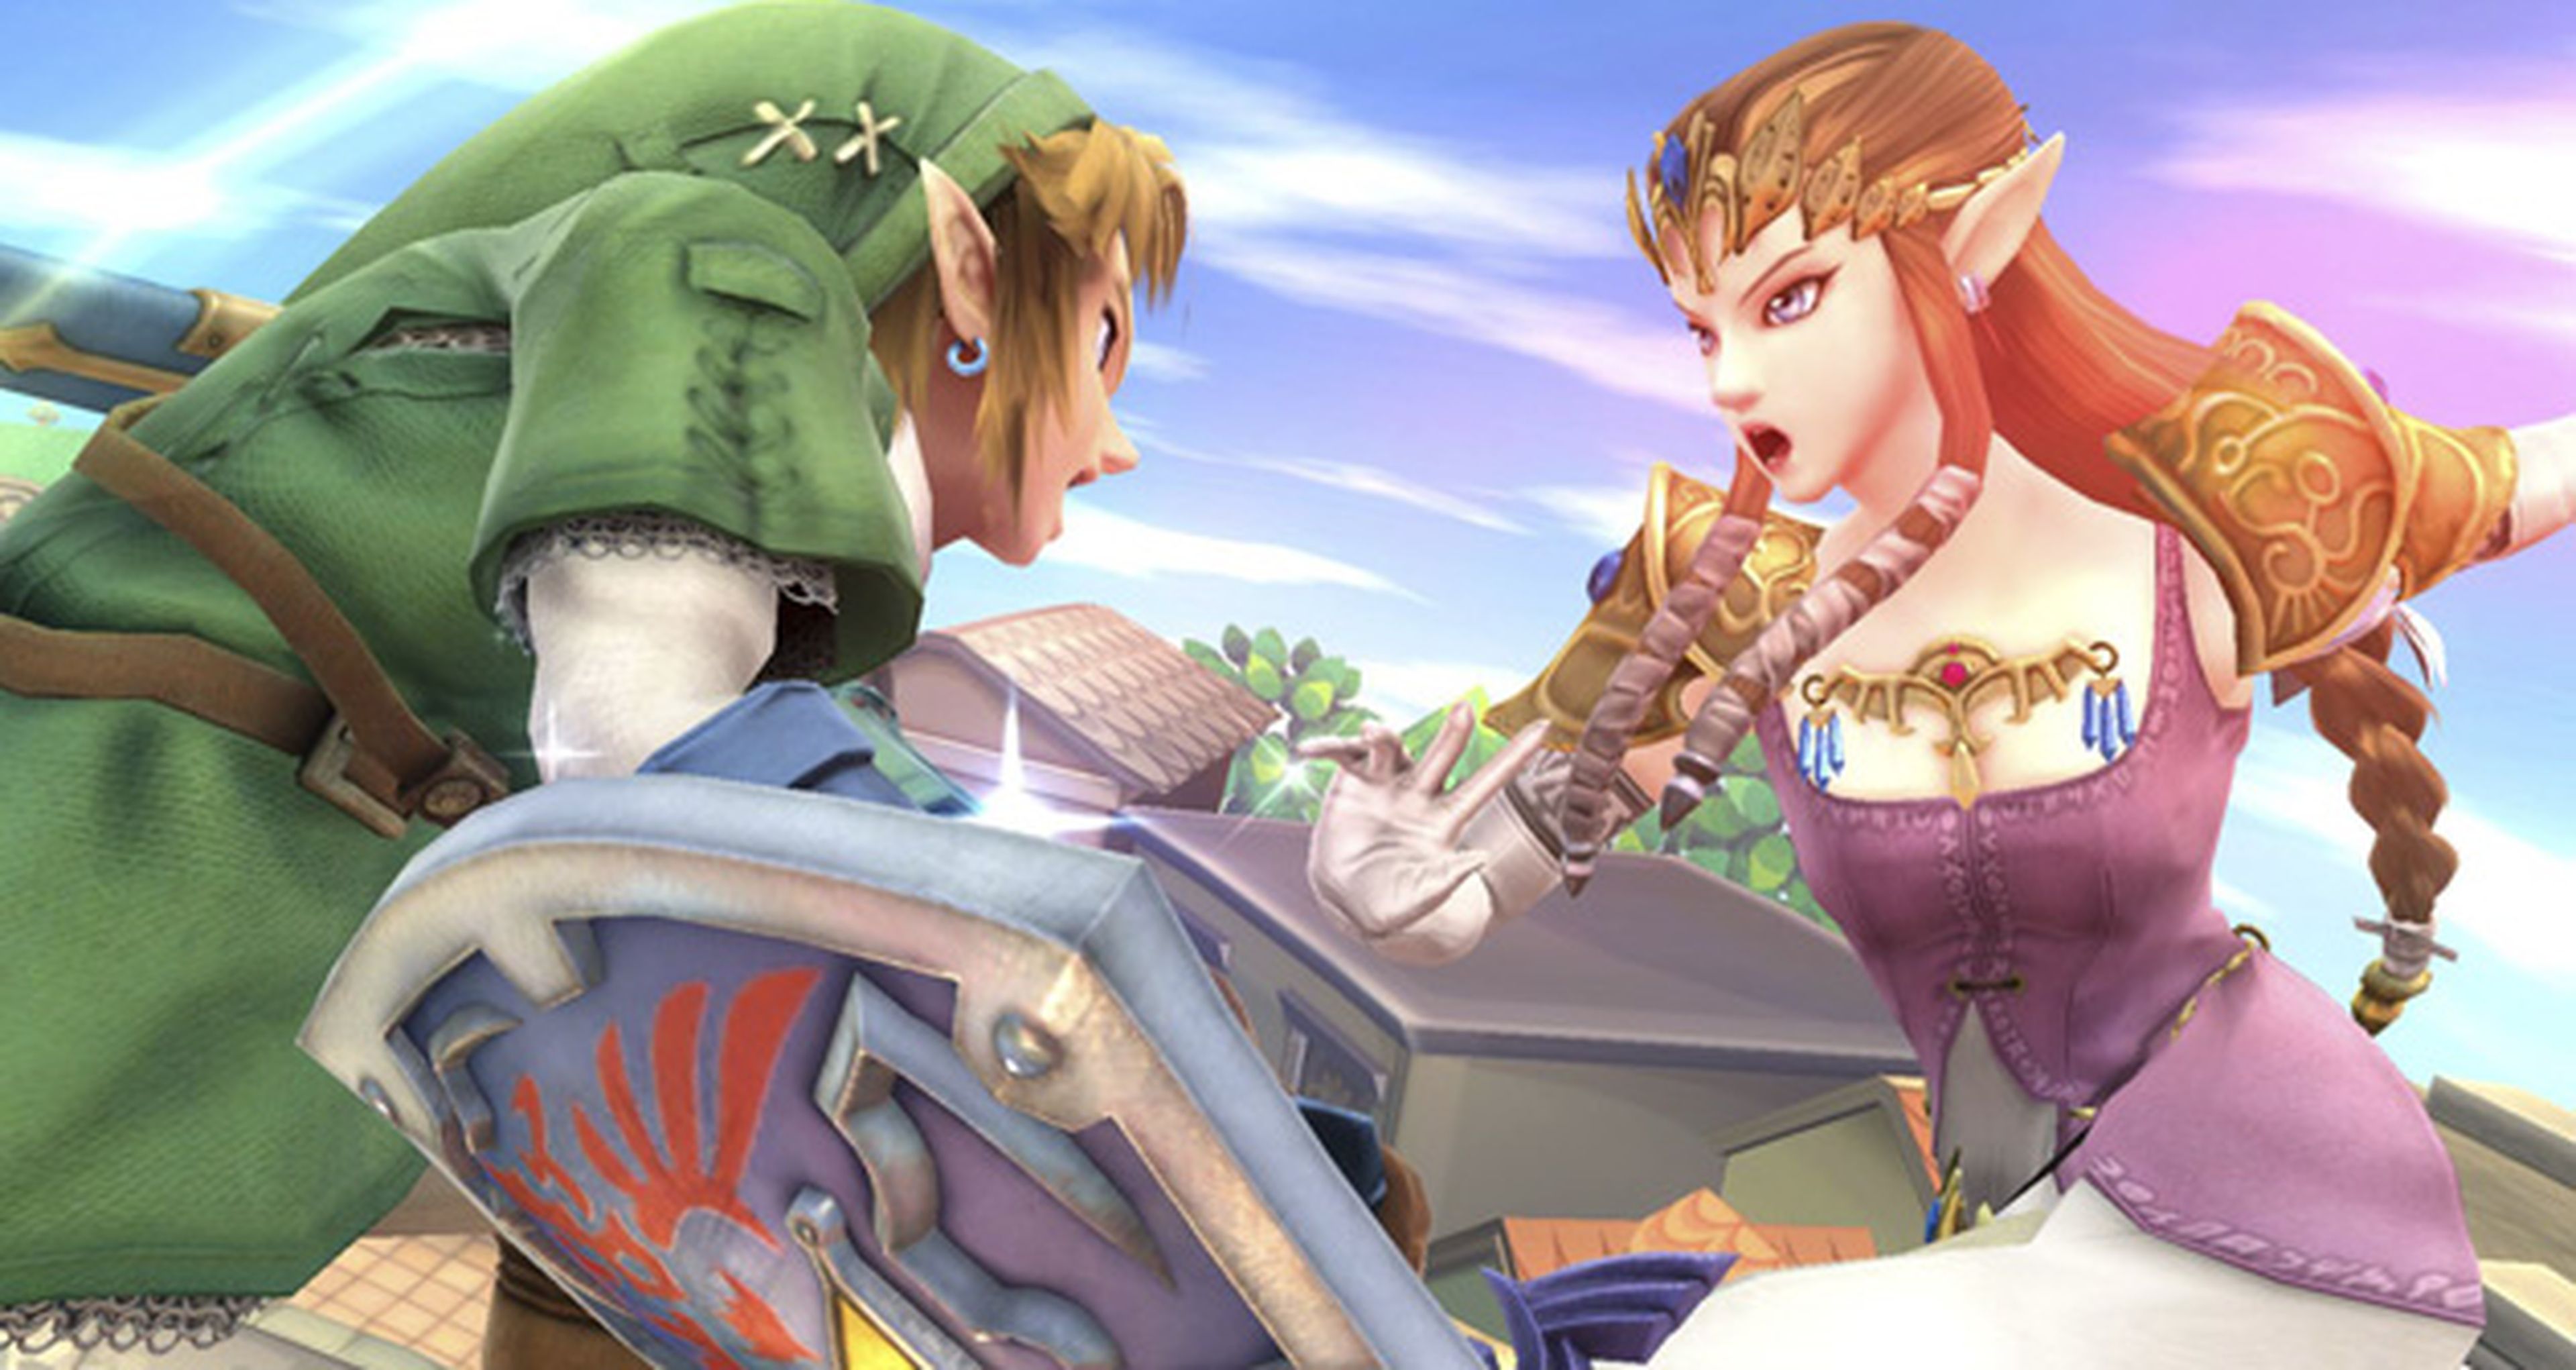 Zelda protagoniza nuevas imágenes en Super Smash Bros